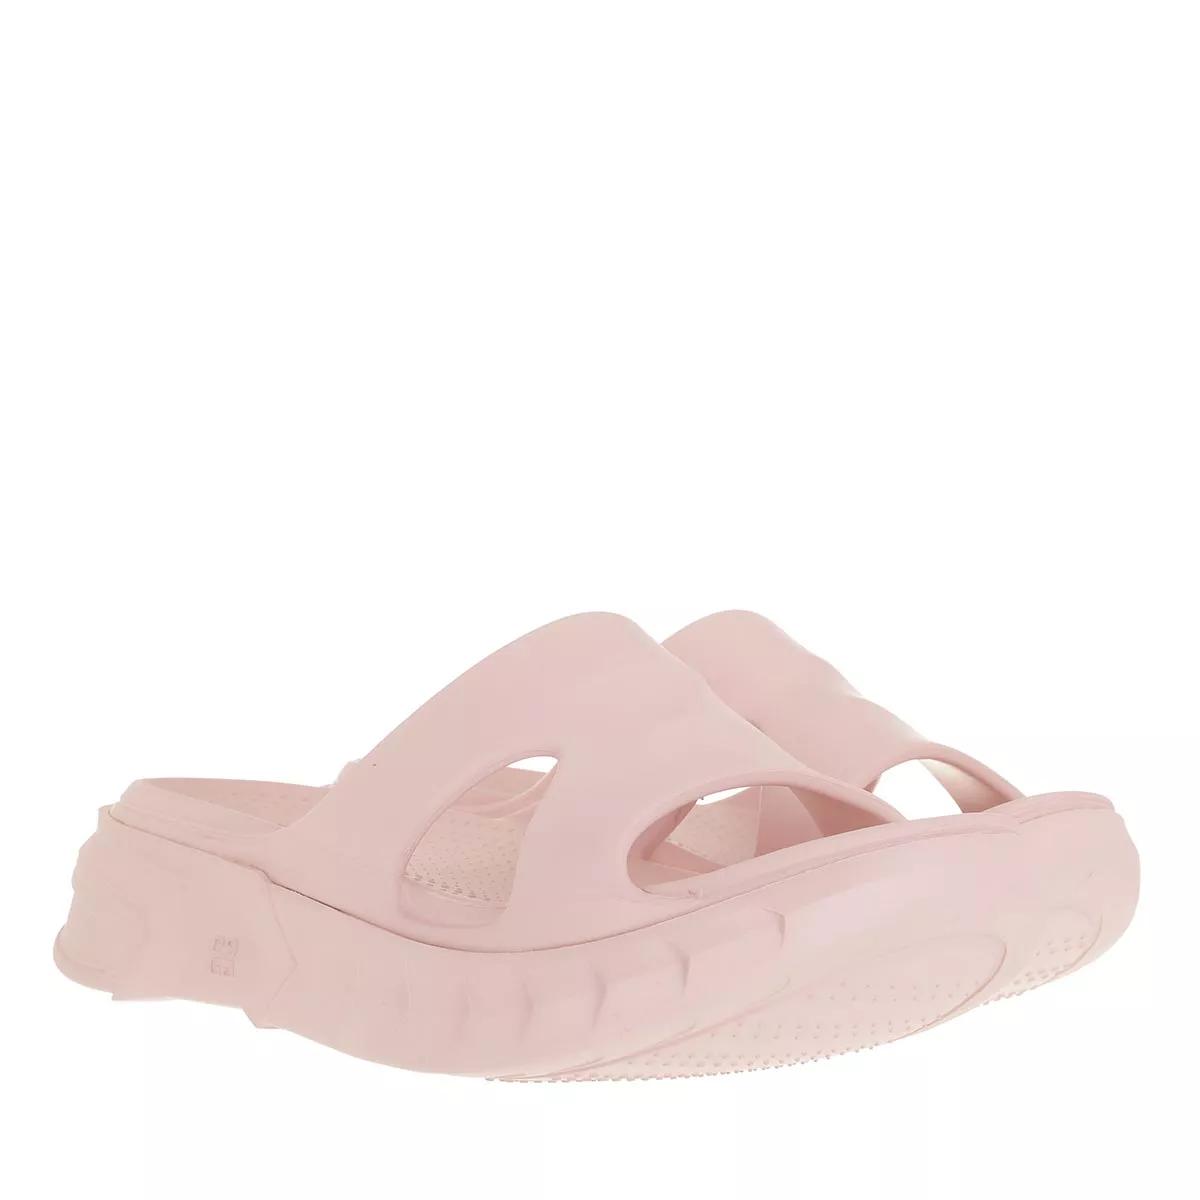 Givenchy Sandalen - Marshmallow Sandals - Gr. 38 (EU) - in Rosa - für Damen von Givenchy